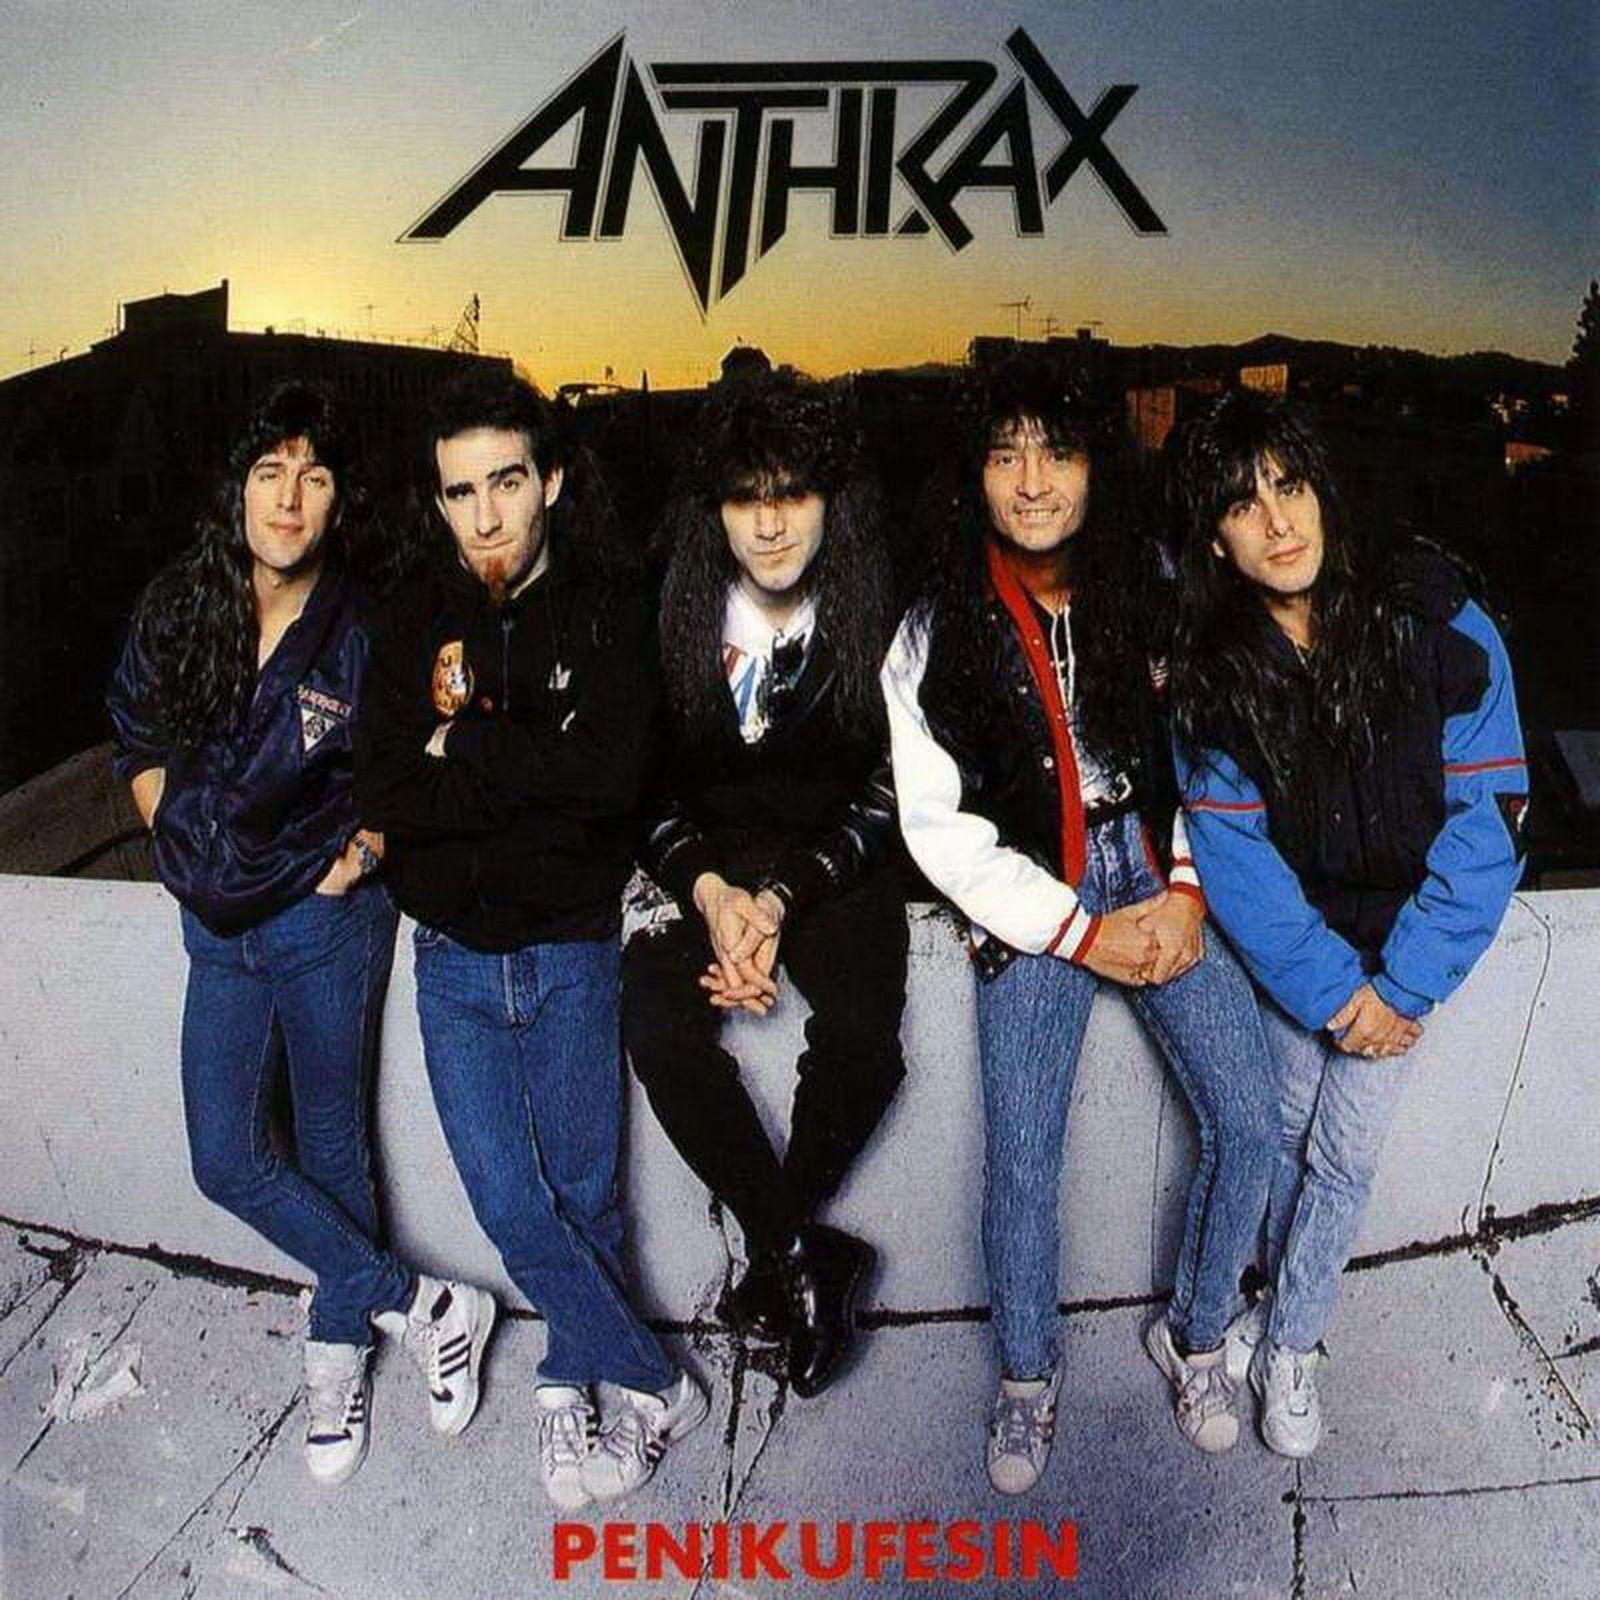 Anthrax Wallpaper -A10 Band Wallpaper